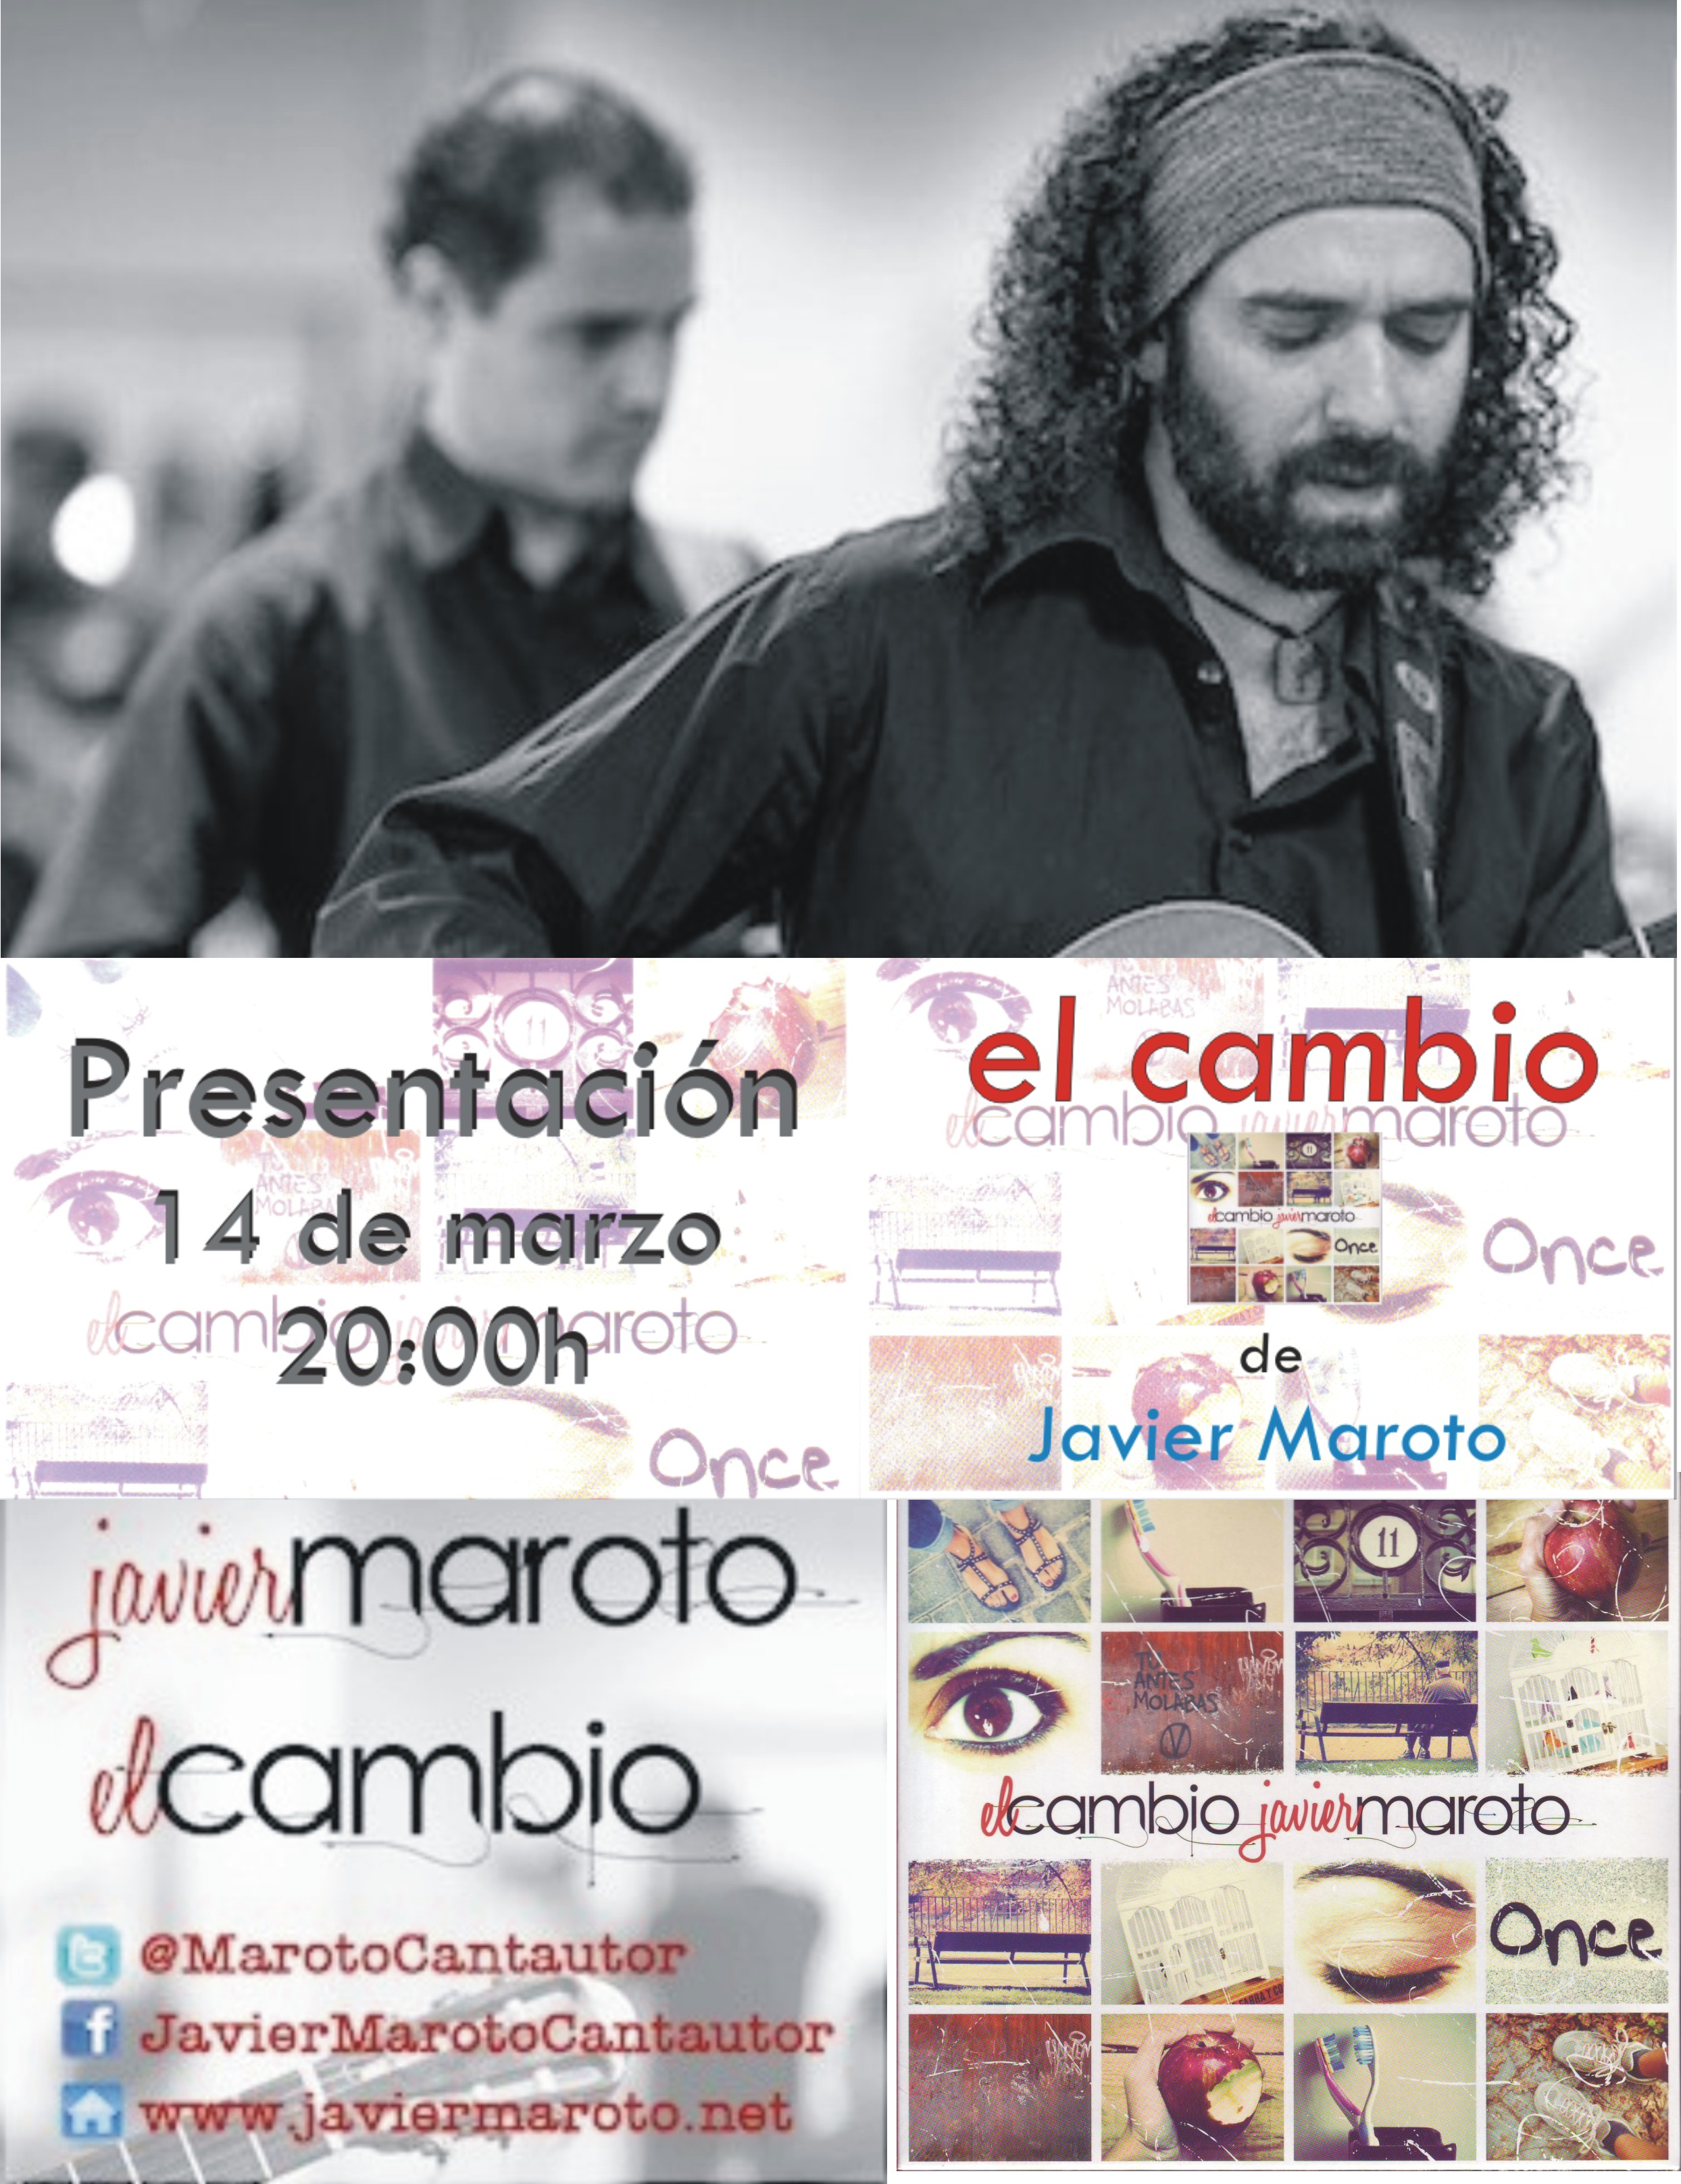 Presentación del disco "El Cambio" de Javier Maroto